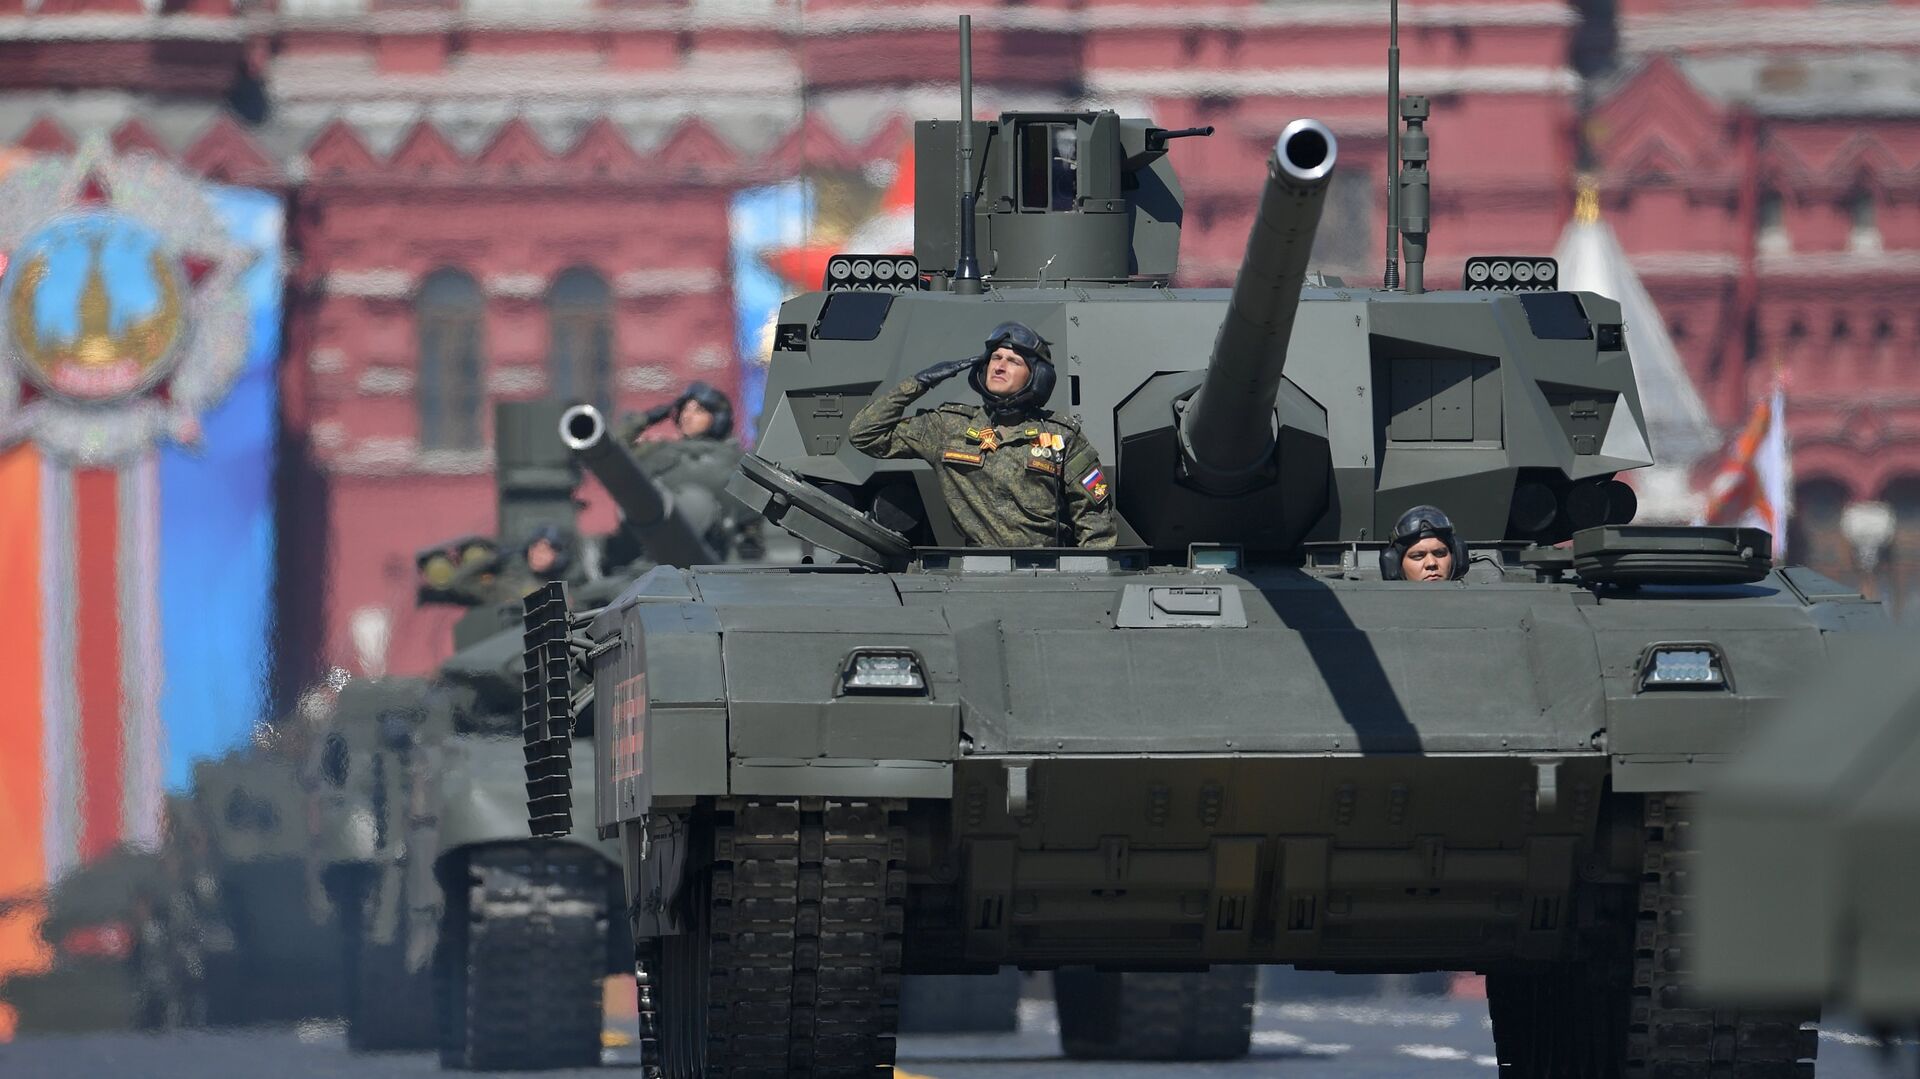 Танк Т-14 Армата на военном параде, посвященном 73-й годовщине Победы в ВОВ - РИА Новости, 1920, 16.01.2021